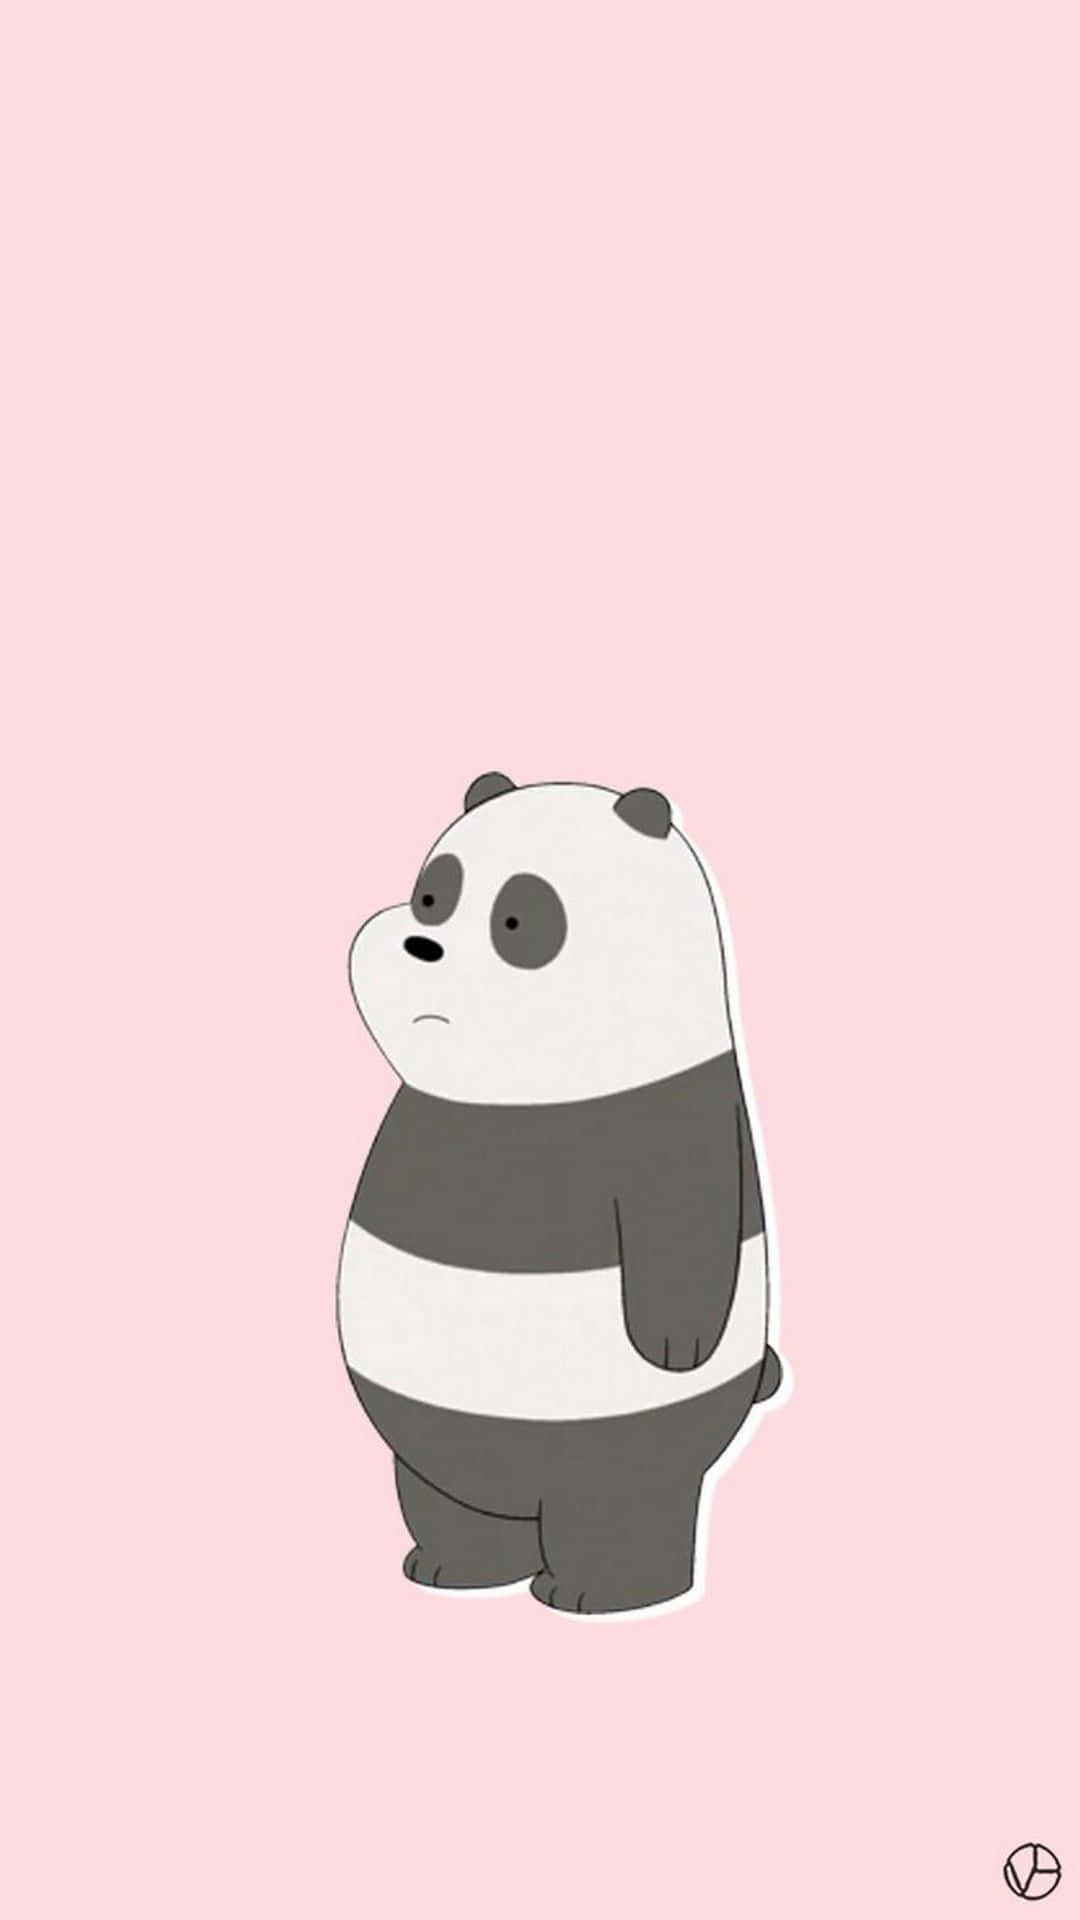 Cute Girly Panda Wallpaper